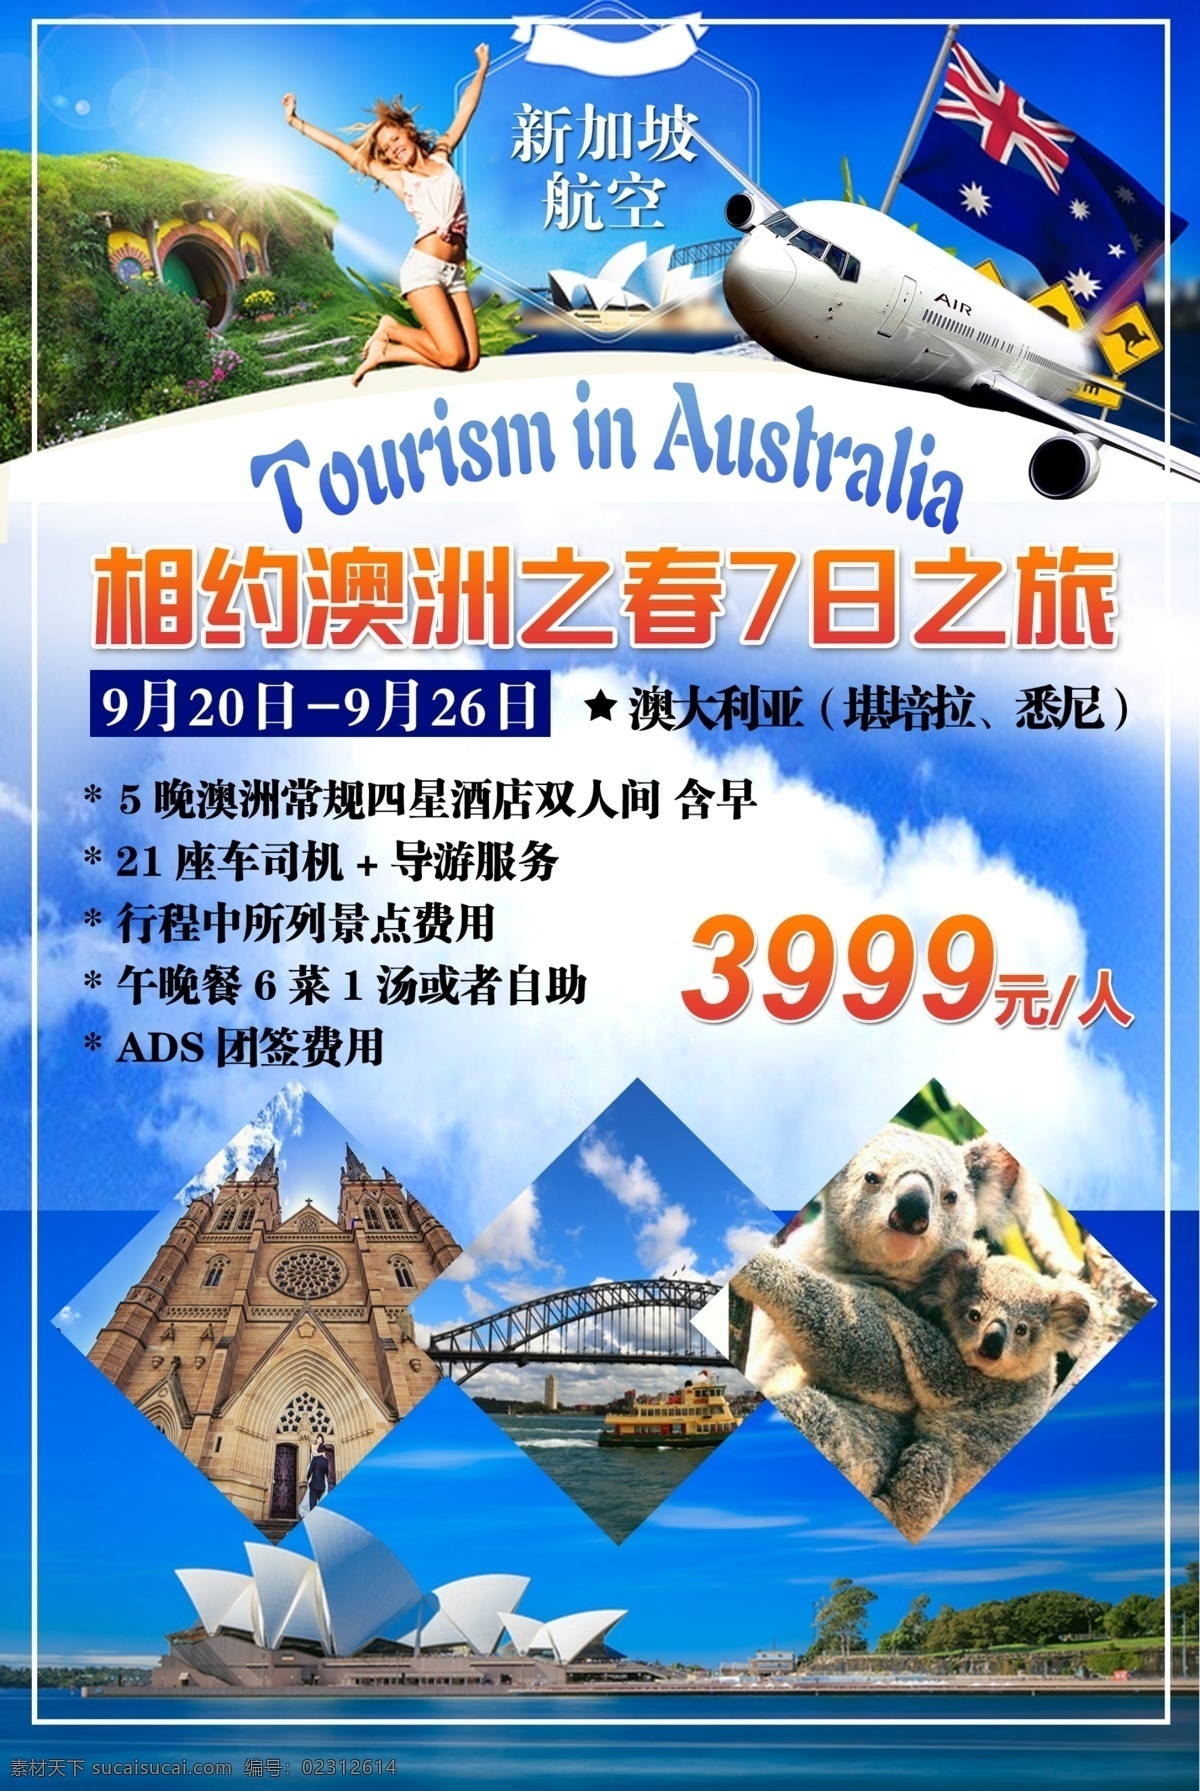 澳洲单页 澳大利亚 旅游 单页 相约春天 考拉